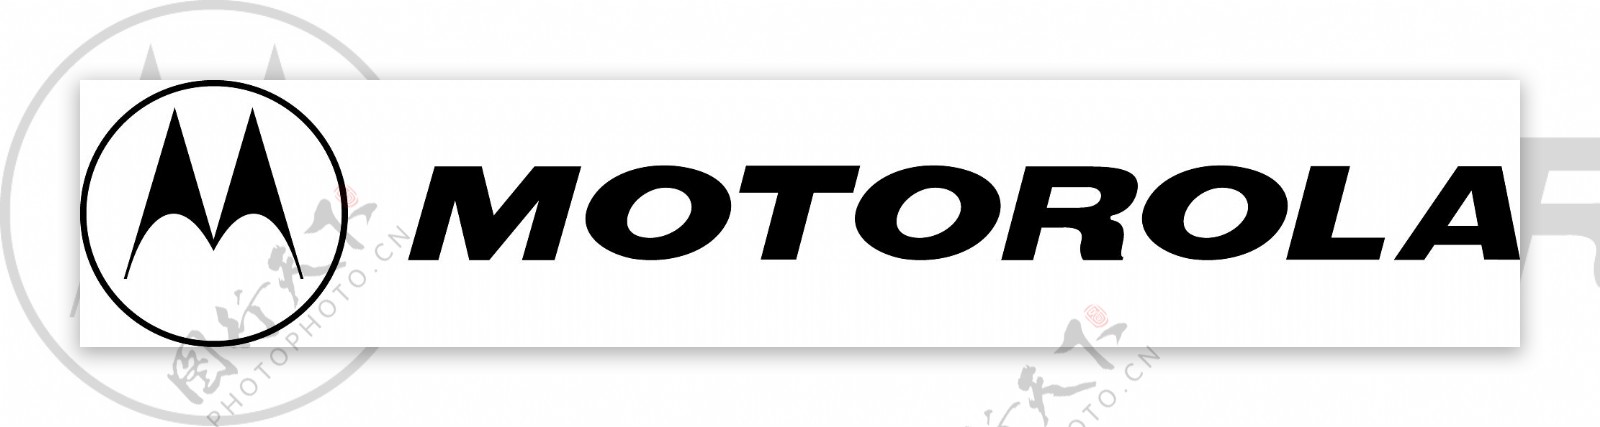 摩托罗拉logo2